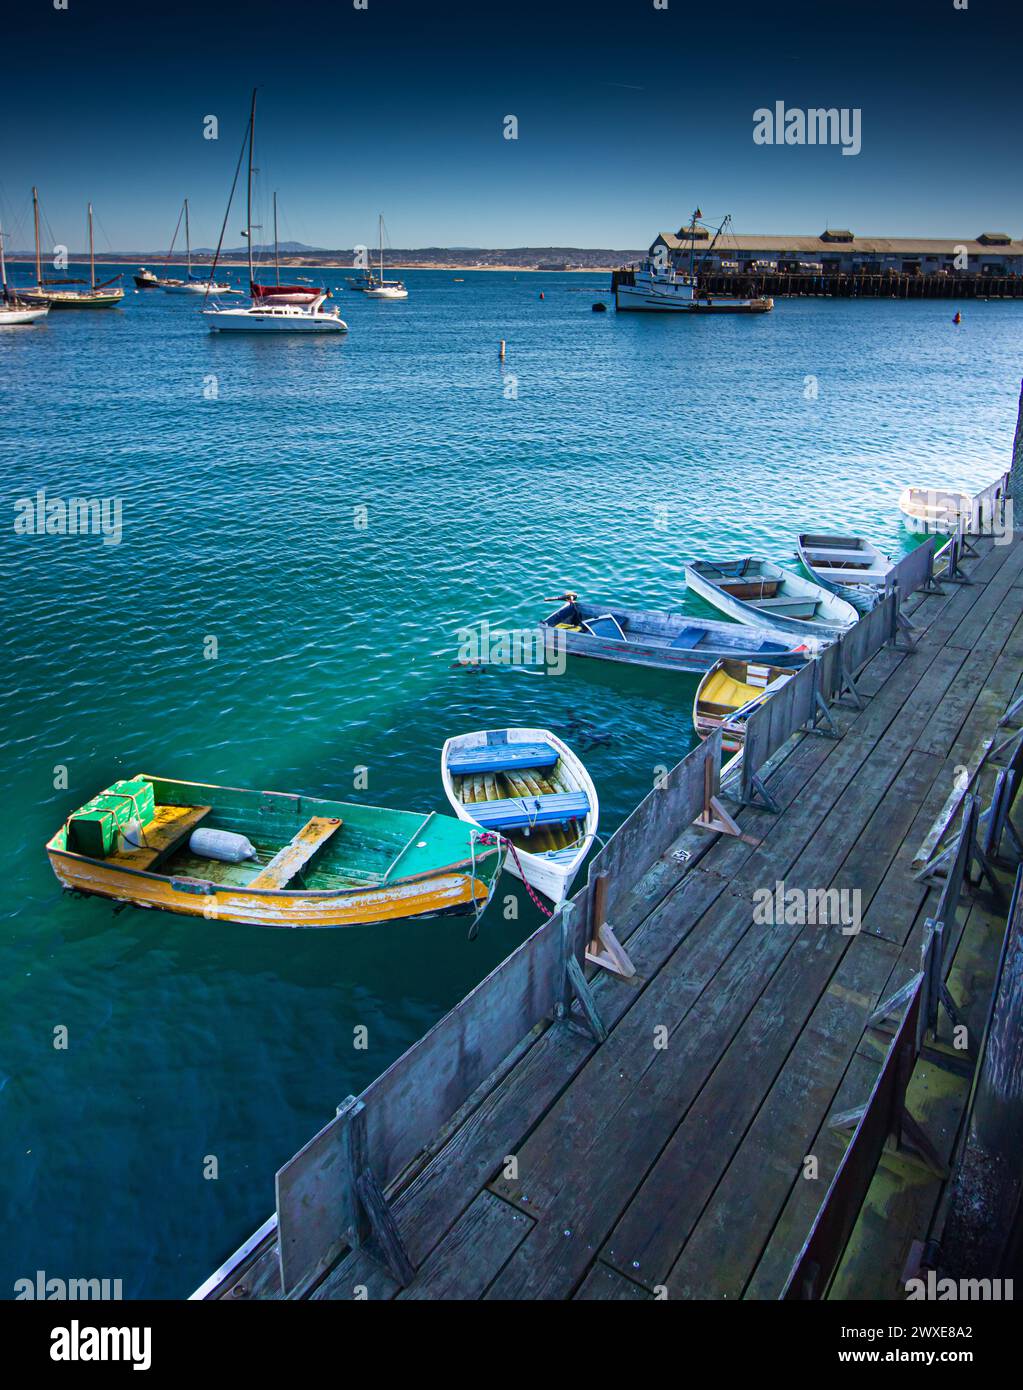 Die farbenfrohen Ruderboote sind an einem rustikalen Holzdock in einer ruhigen maritimen Umgebung befestigt Stockfoto